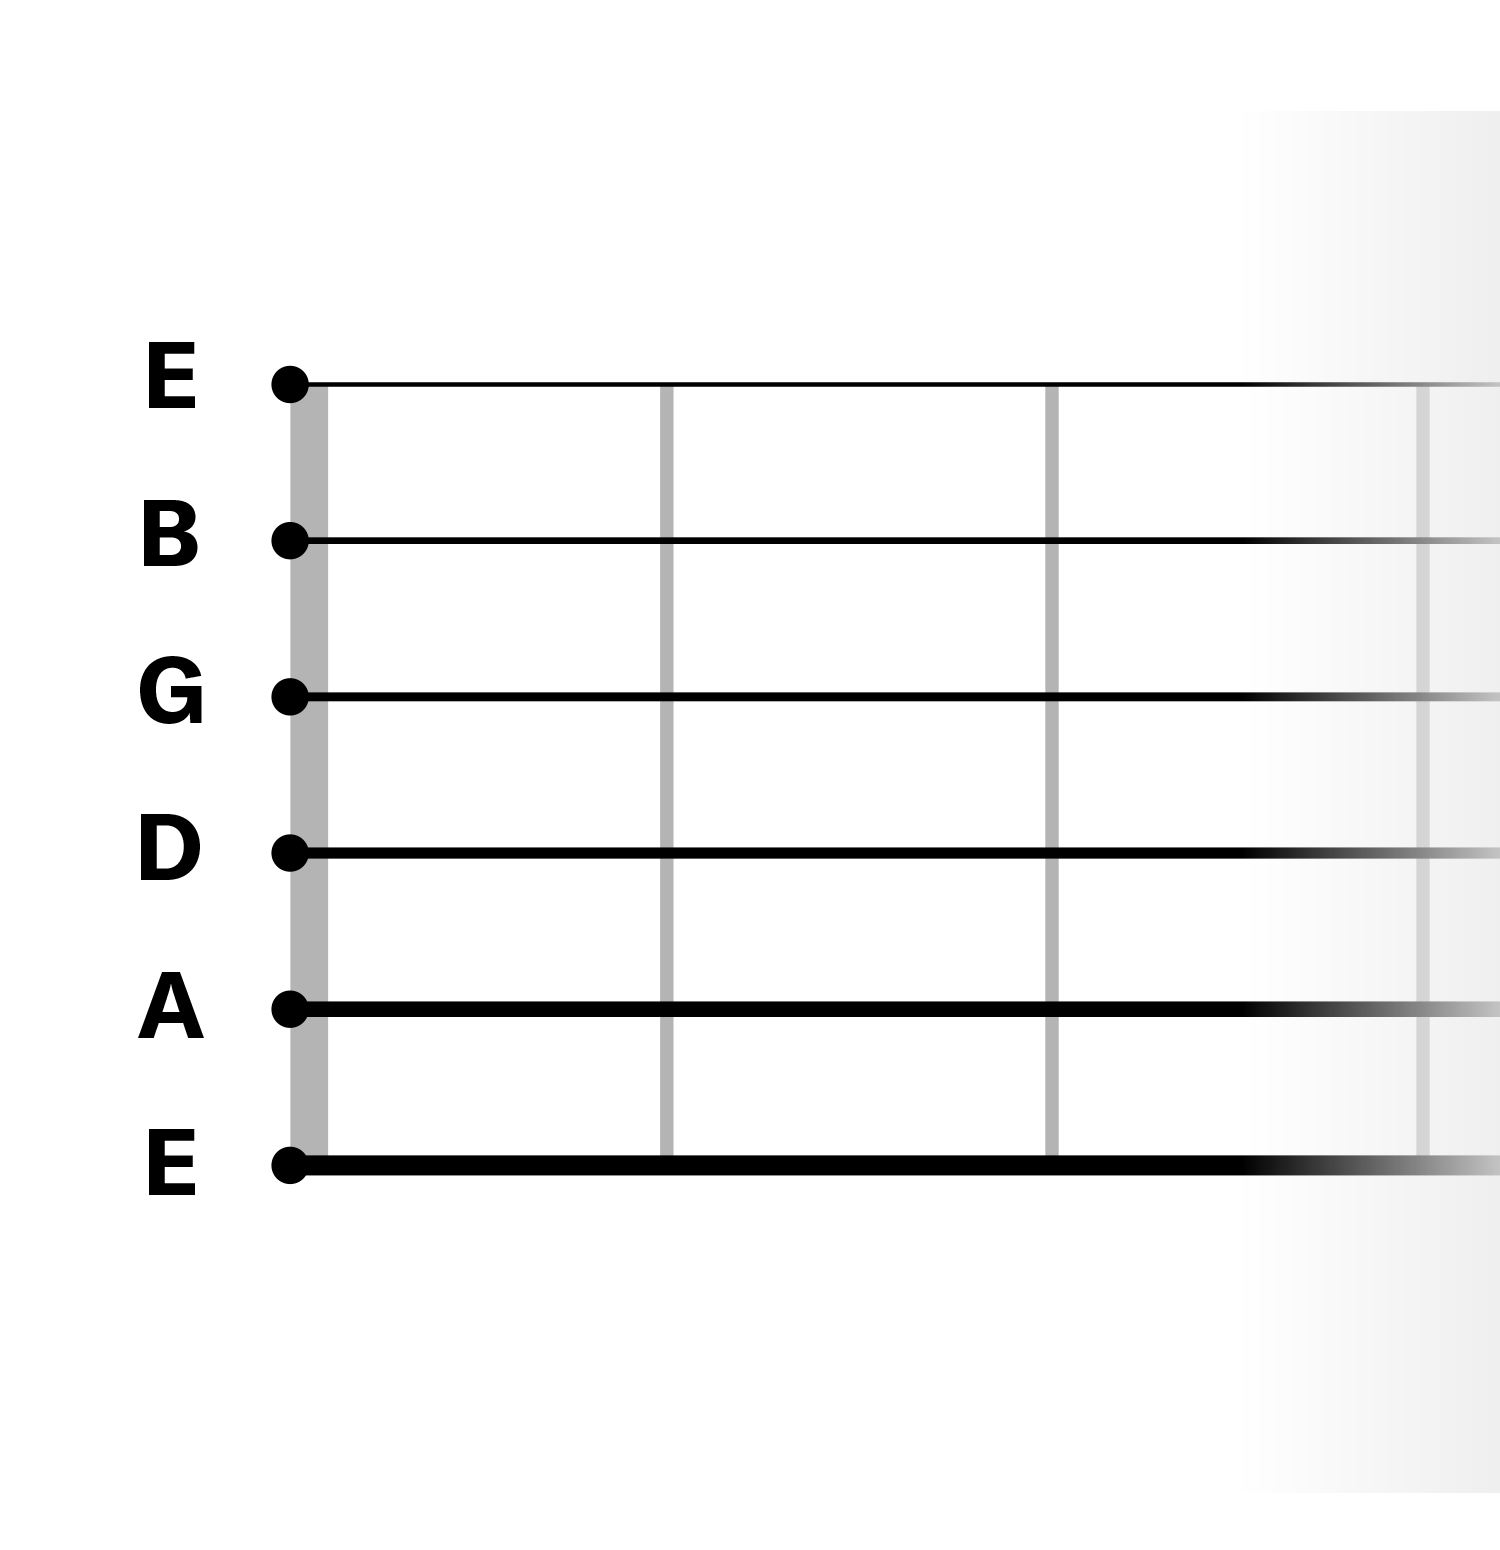 labeled guitar string diagram E-A-D-G-B-E